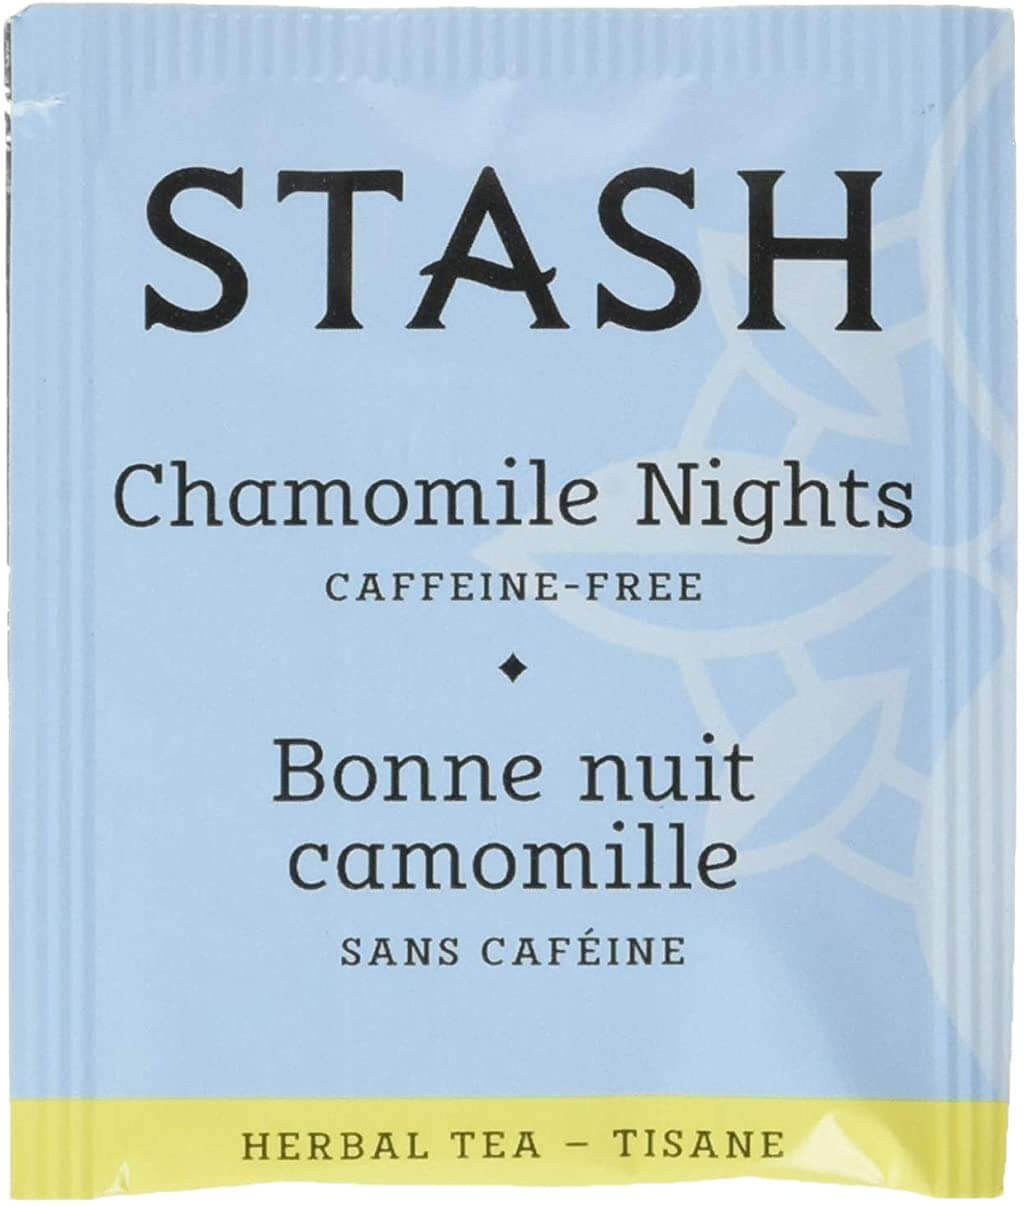 Stash Chamomile Tea